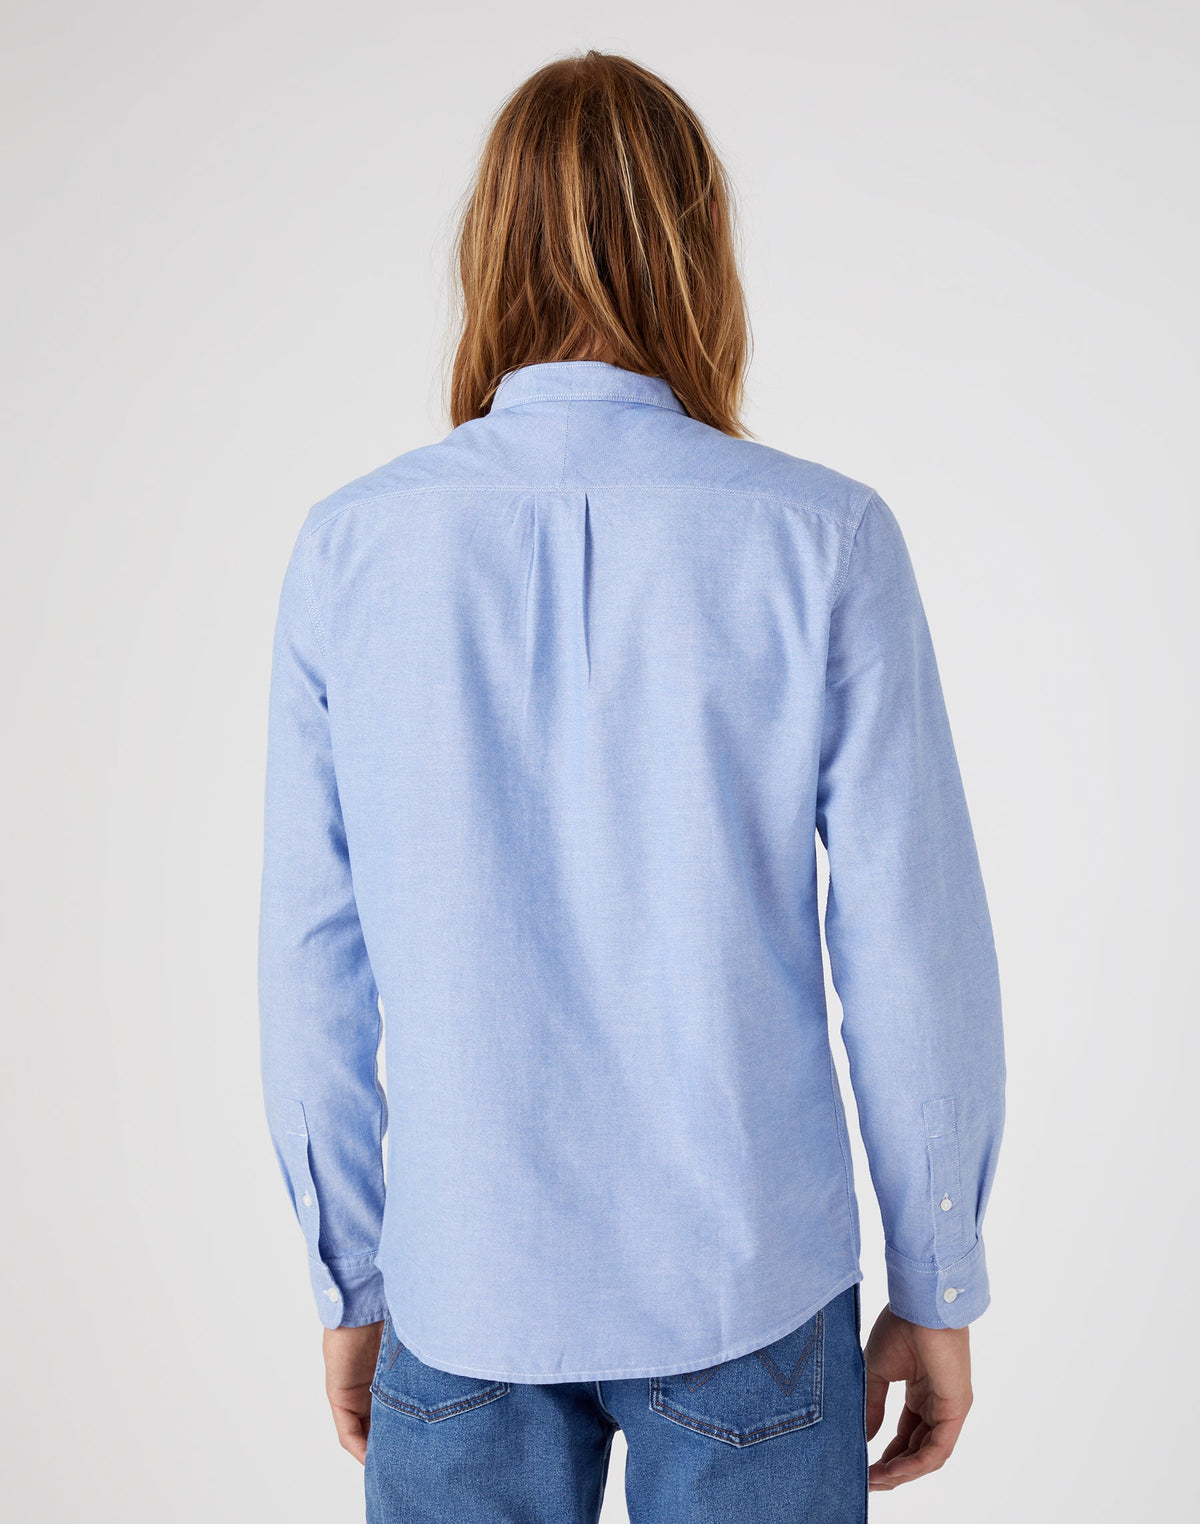 One Pocket Shirt in Limoges Blue